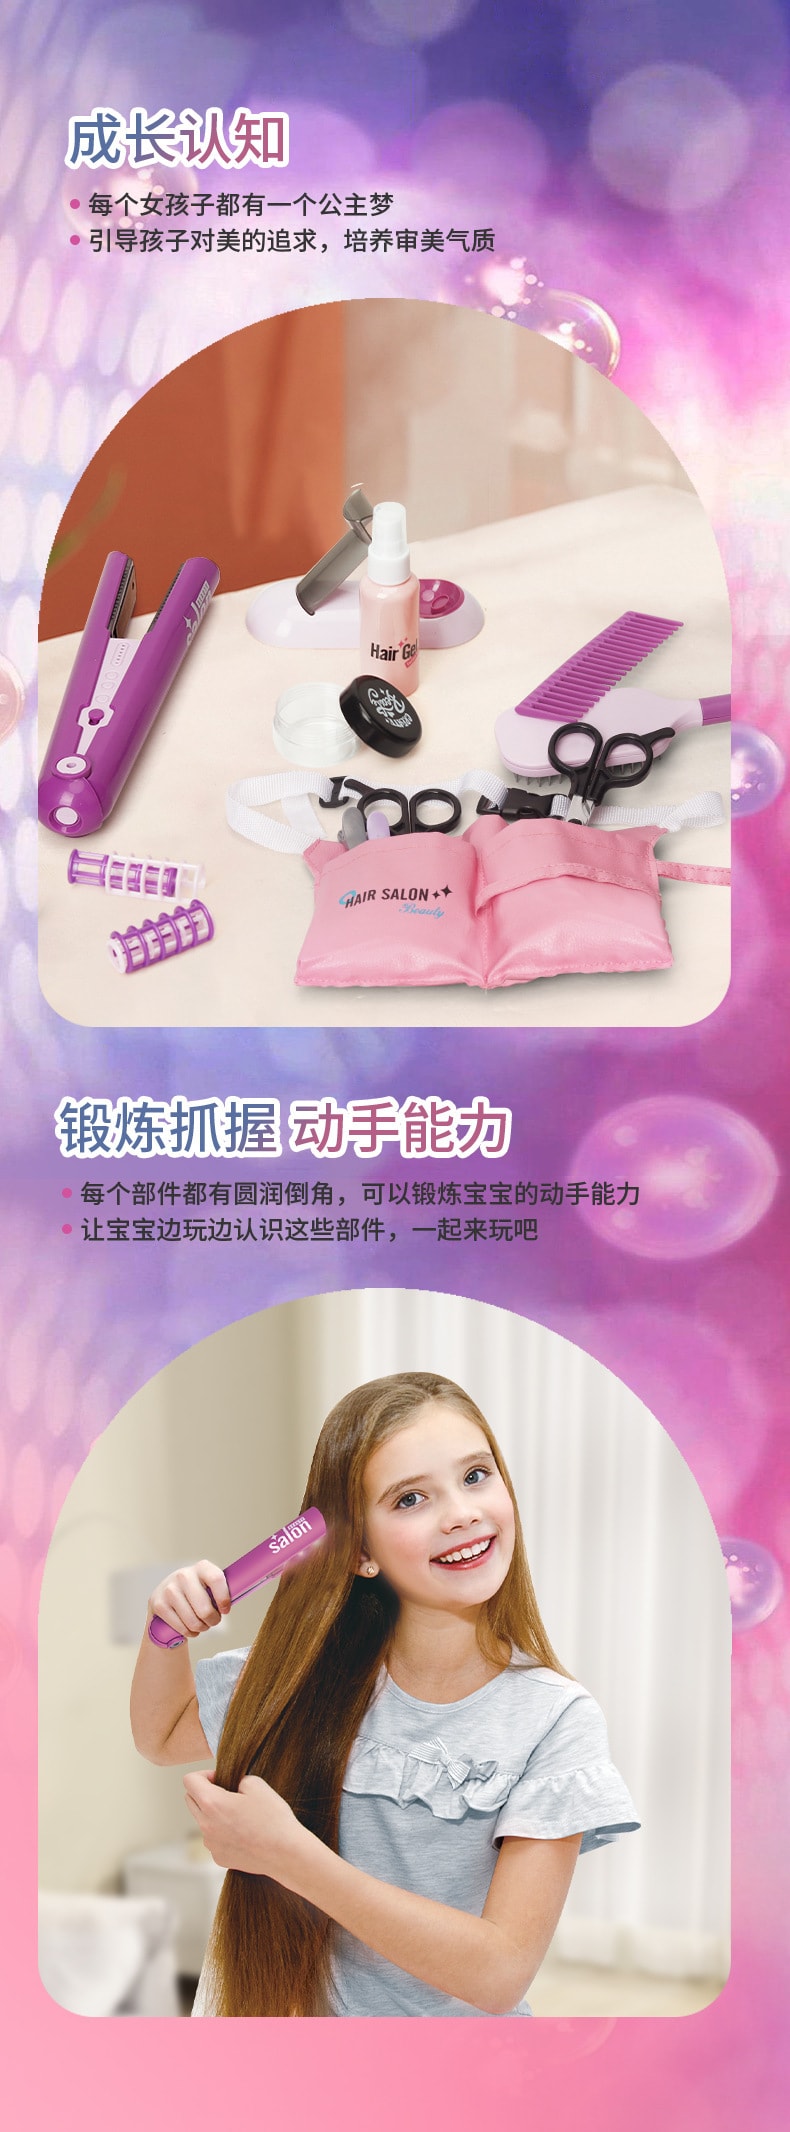 【中國直郵】靈動創想 女孩美髮沙龍套裝吹風機過家家兒童梳理化妝打扮玩具套裝 10件套